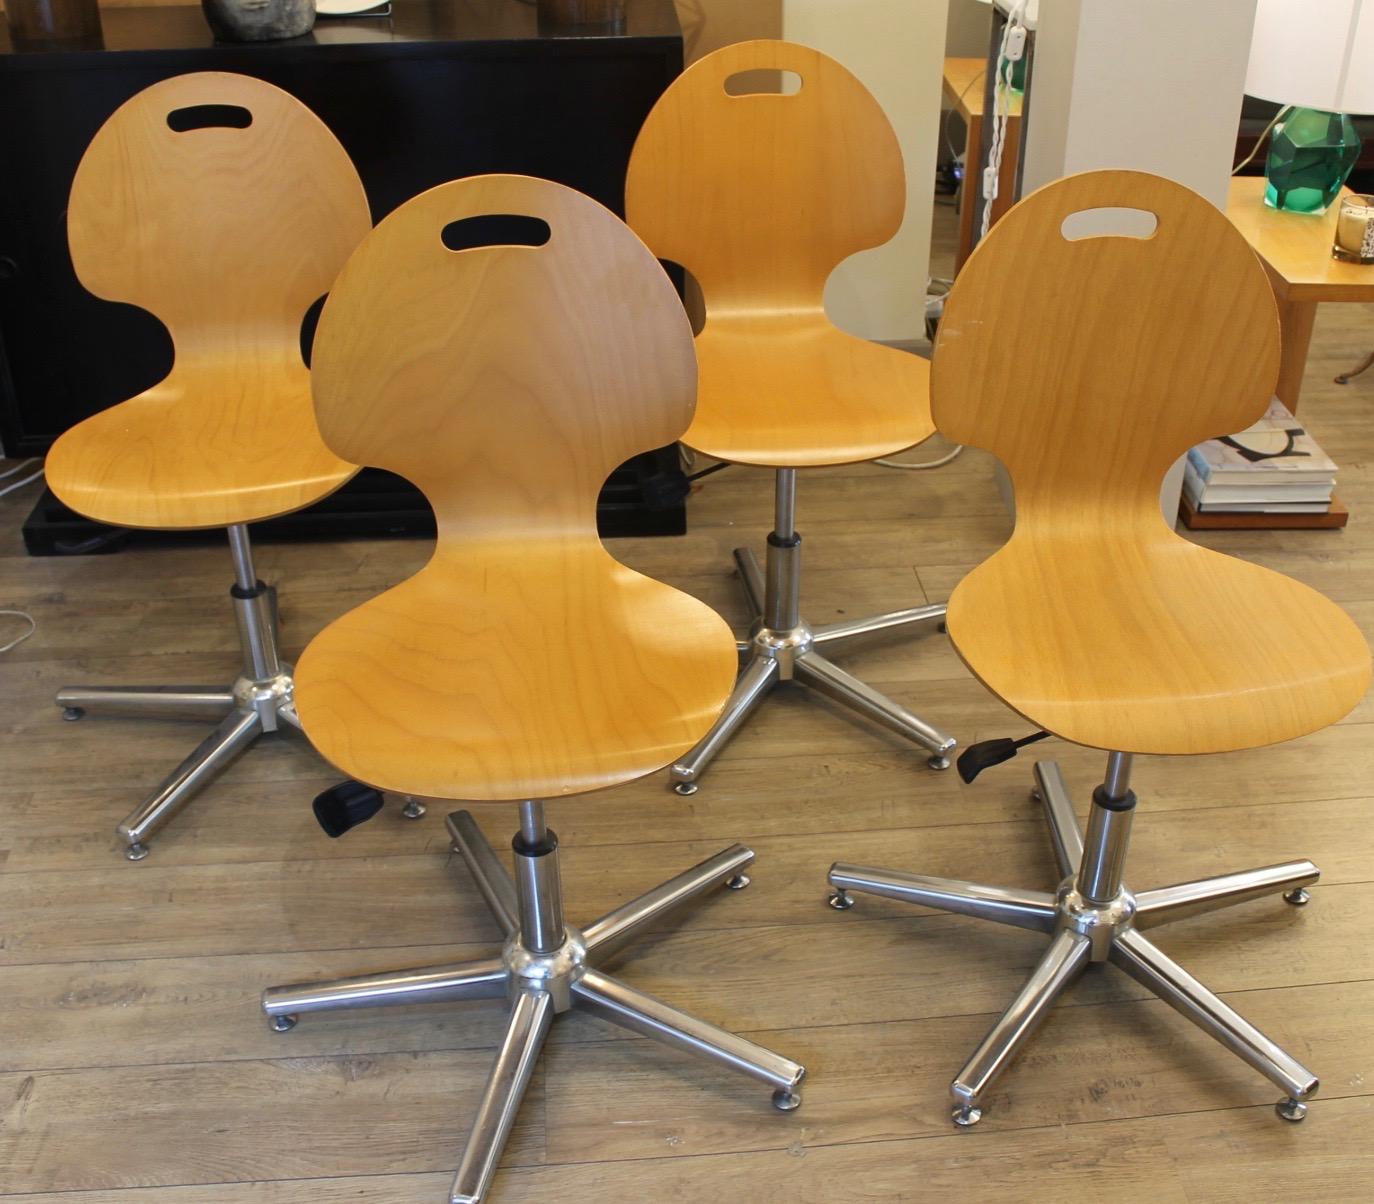 Eine Serie von 4 Bürostühlen aus hellem Holz, Beine aus Aluminium. Sie sind in gutem Zustand.
Sie haben ein schwenkbares und ansteigendes System. Die untere Sitzfläche beträgt 22 cm. Sie können auch um einen Esstisch herum aufgestellt werden.